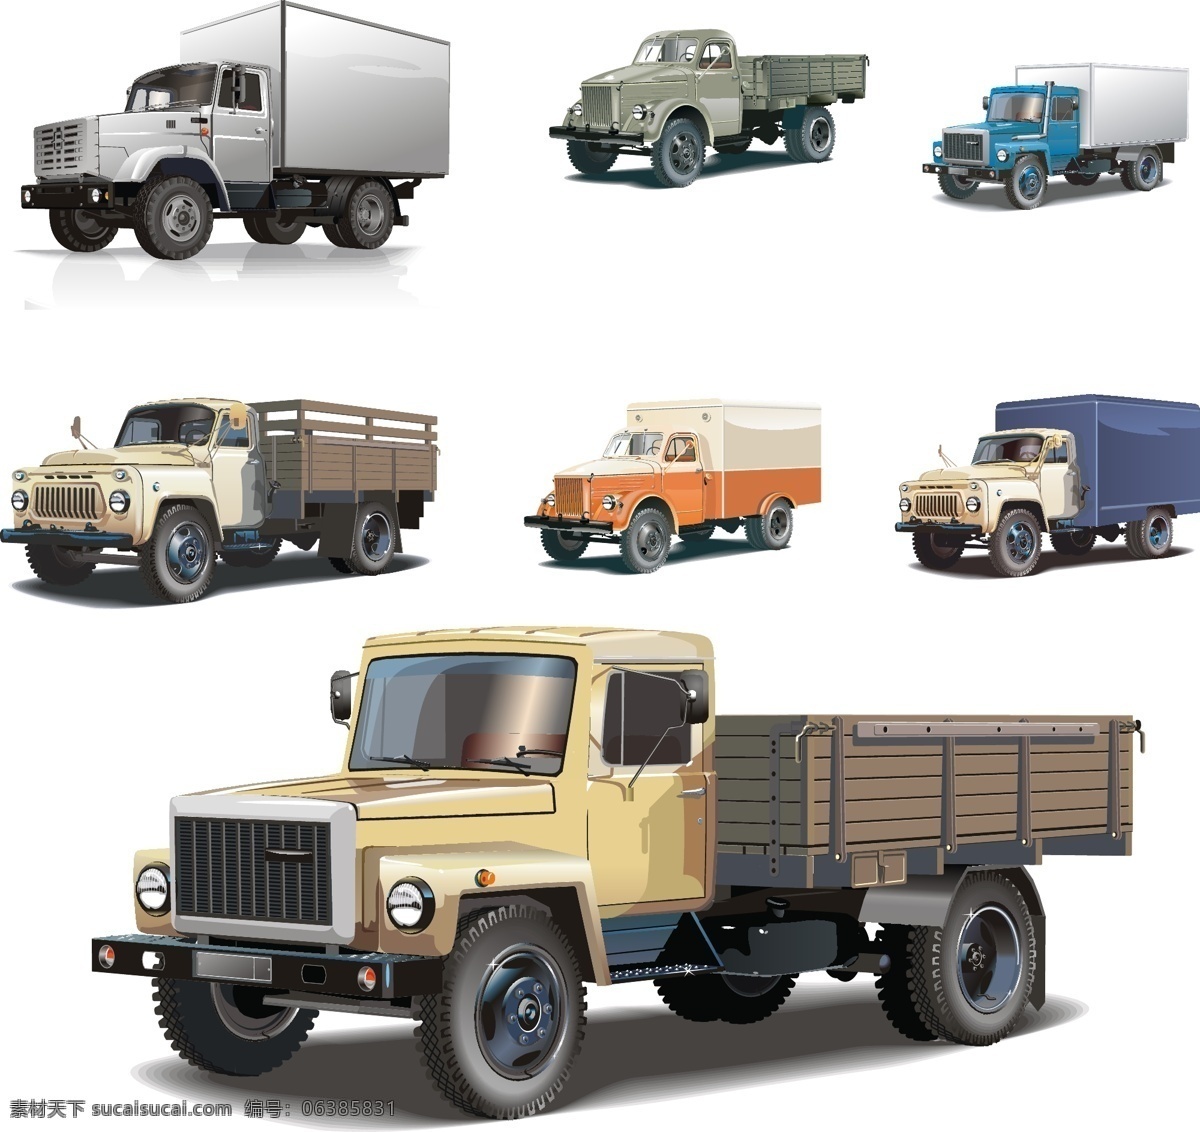 大卡车 货车 汽车素材 货车素材 ai素材 现代科技 交通工具